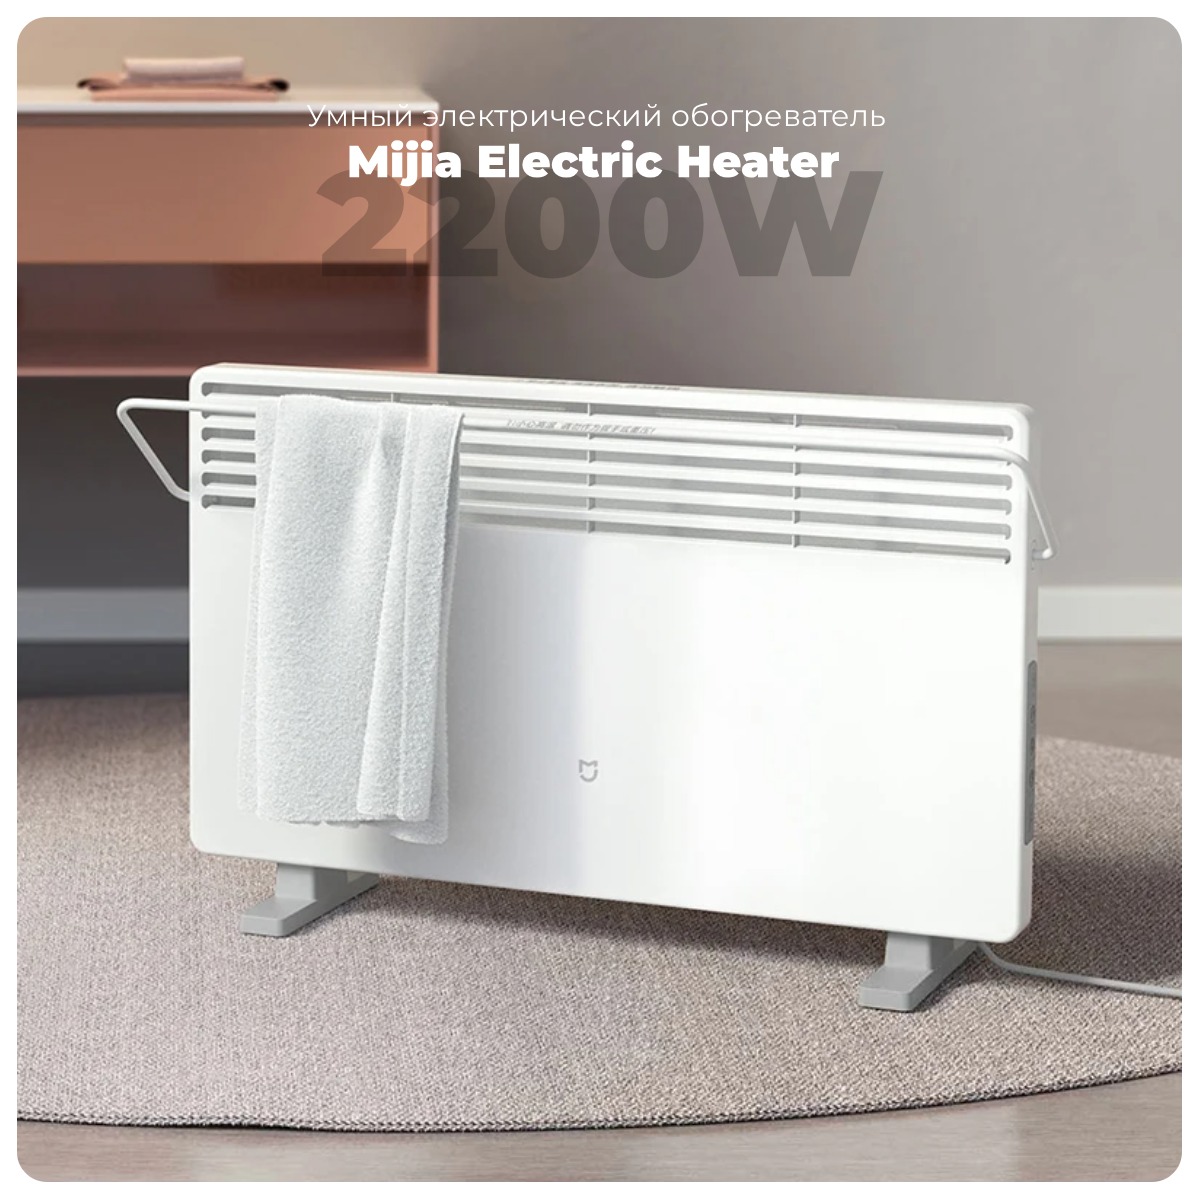 Mijia-Electric-Heater-2200W-KRDNQ04ZM-01